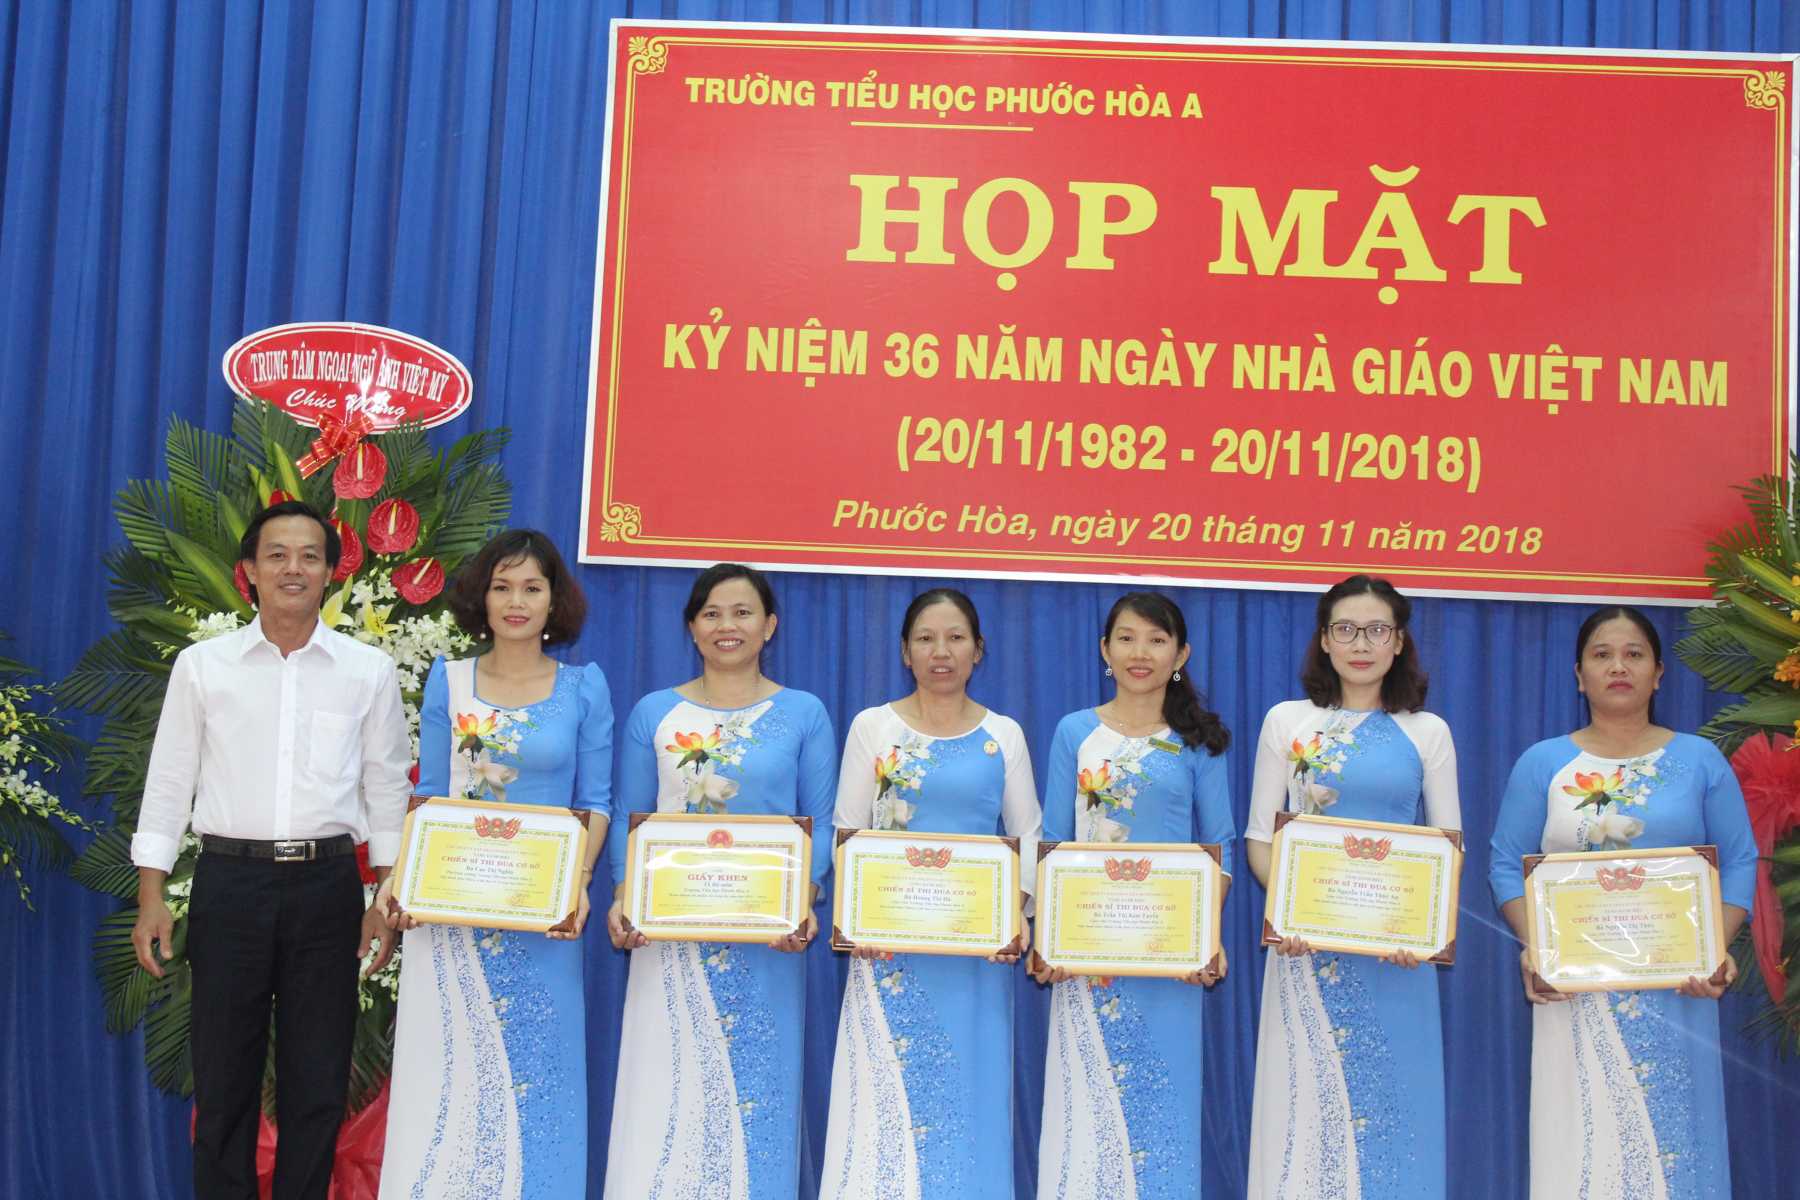 Thầy Trần Minh Tâm - Hiệu trưởng nhà trường trao tặng giấy khen cho các cô đạt danh hiệu Chiến sĩ thi đua